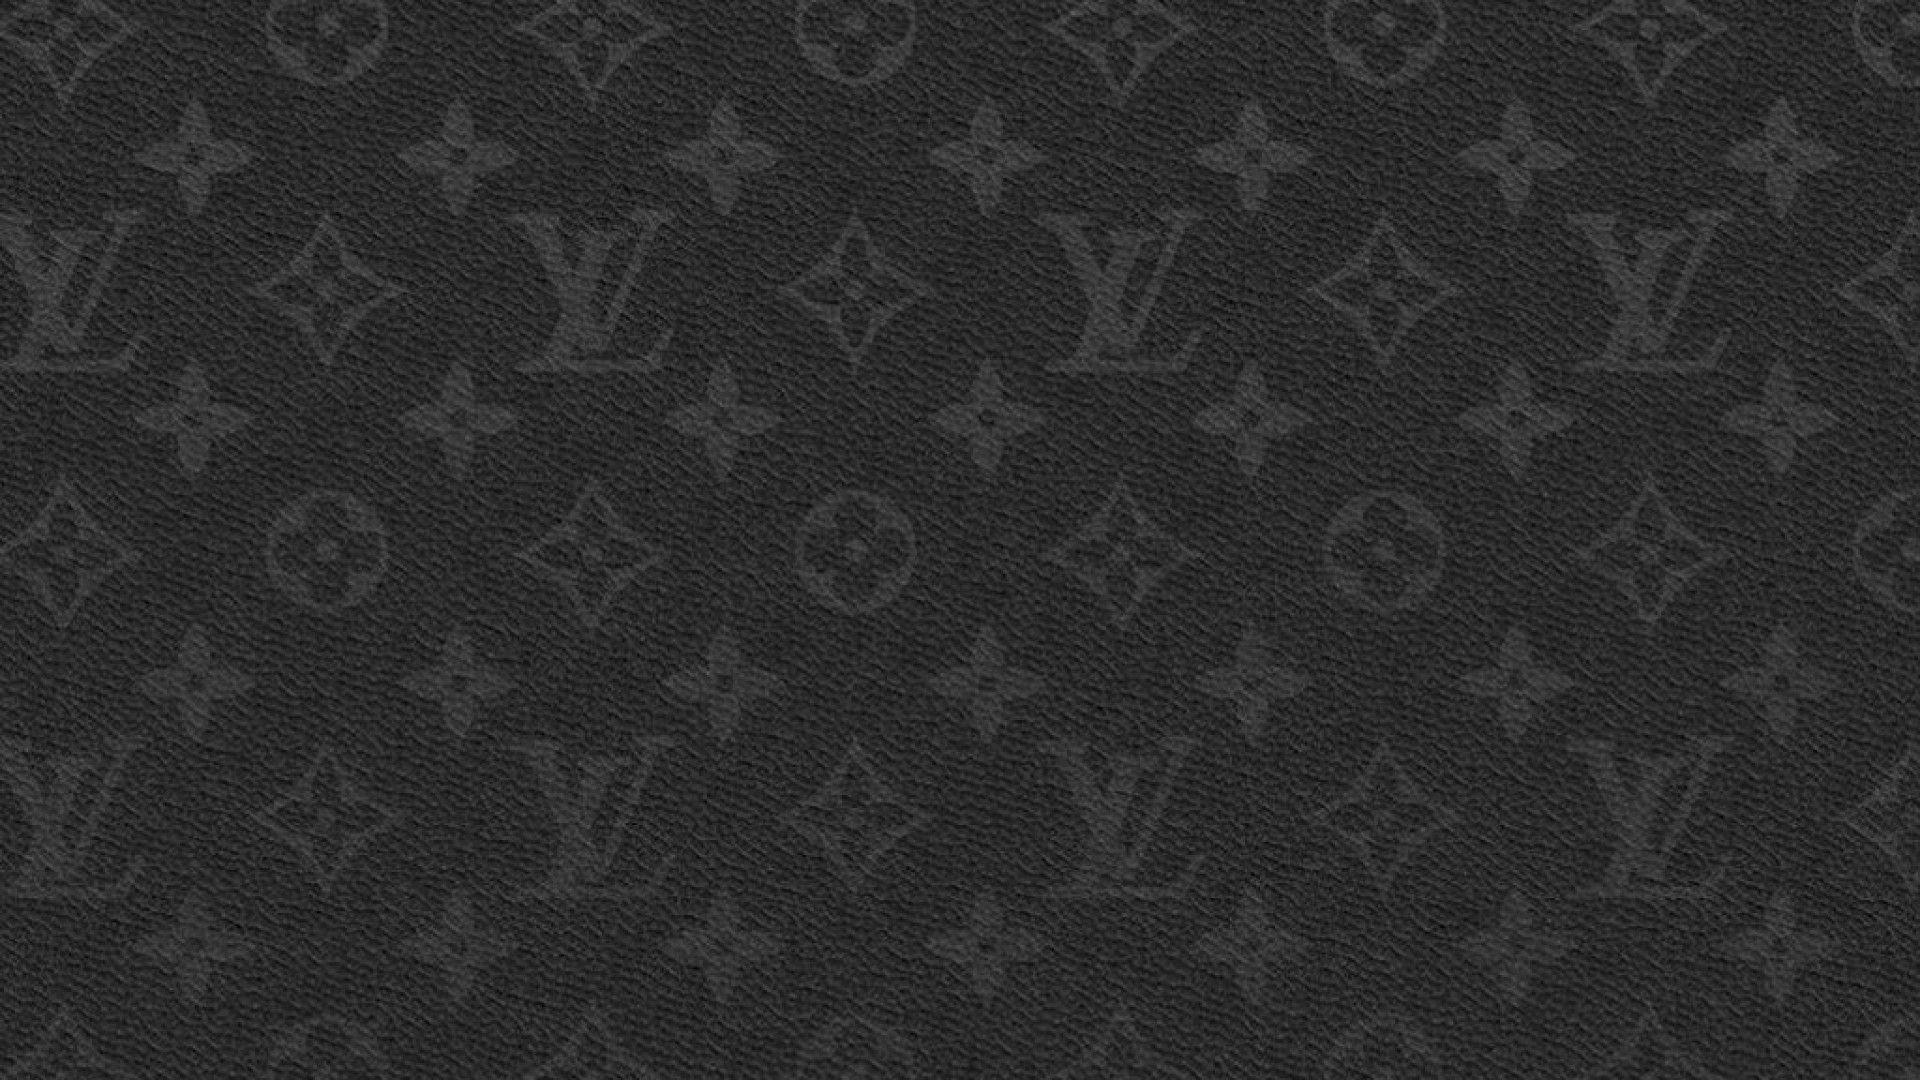 Fonds d&;écran Louis Vuitton, tous les wallpaper Louis Vuitton